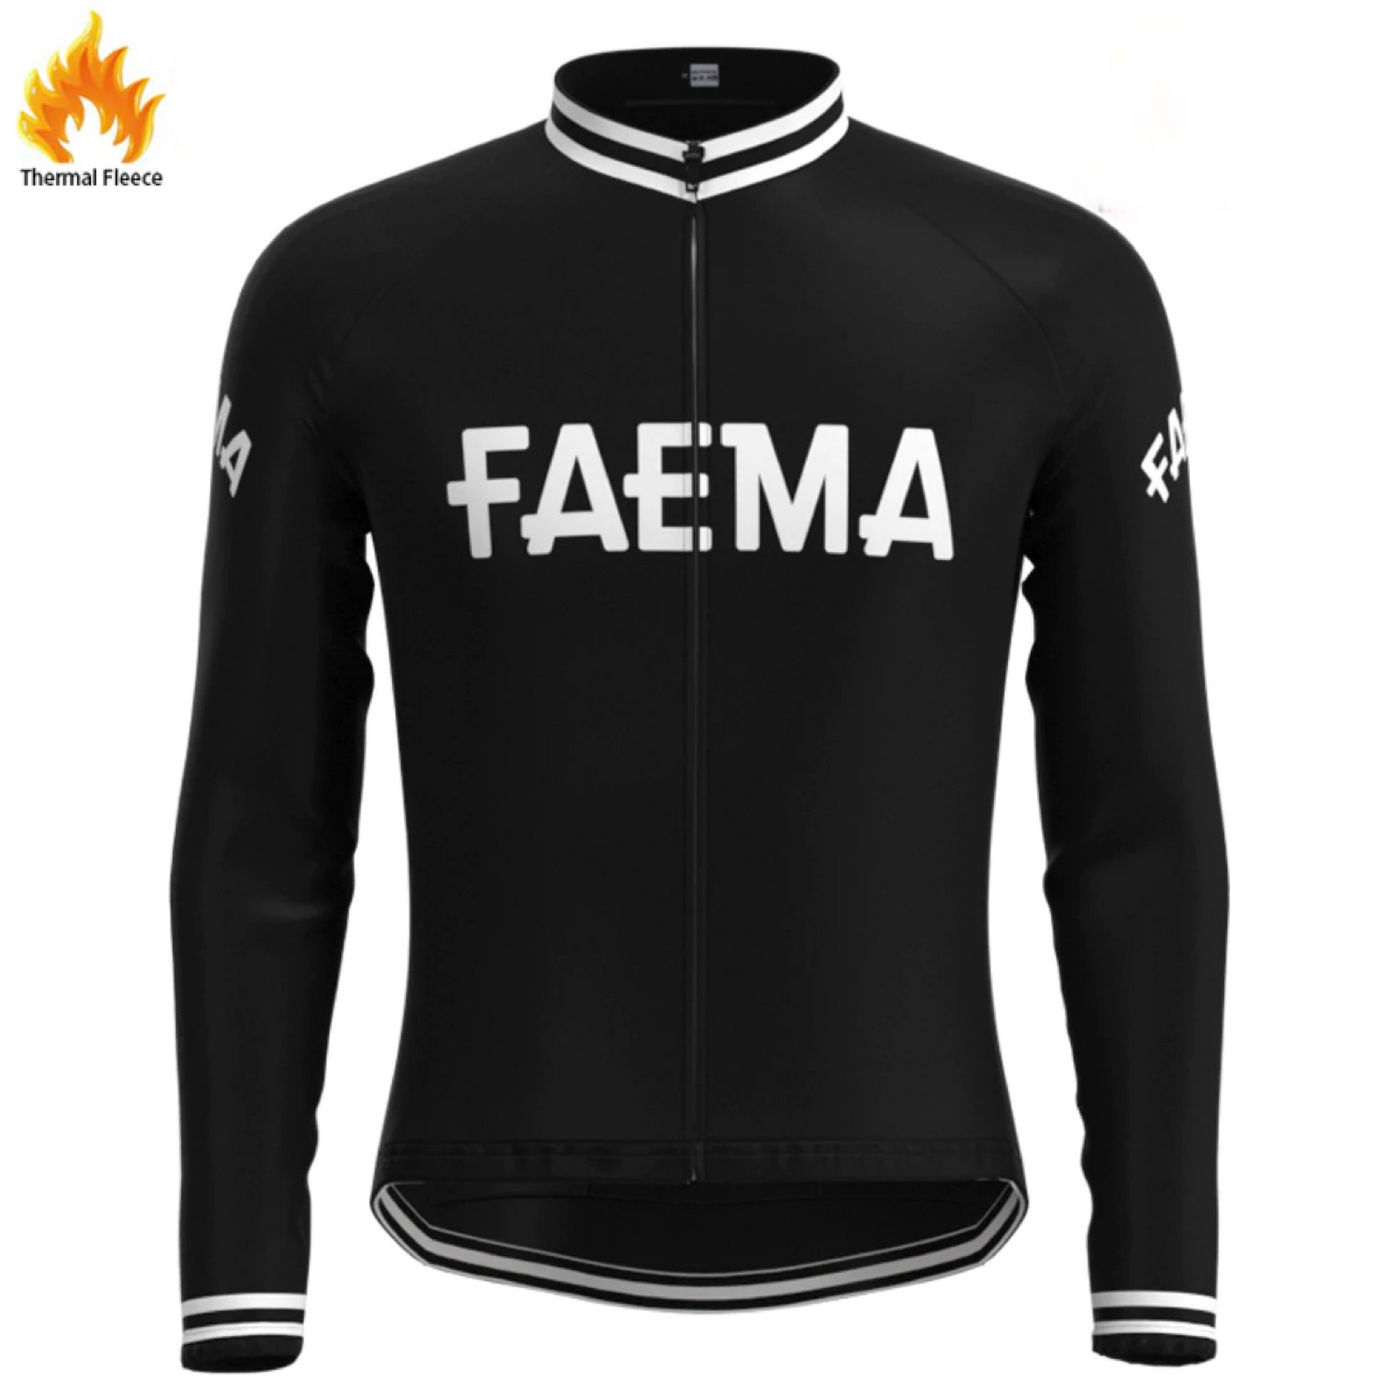 Pro Team Jacket FAEMA Black